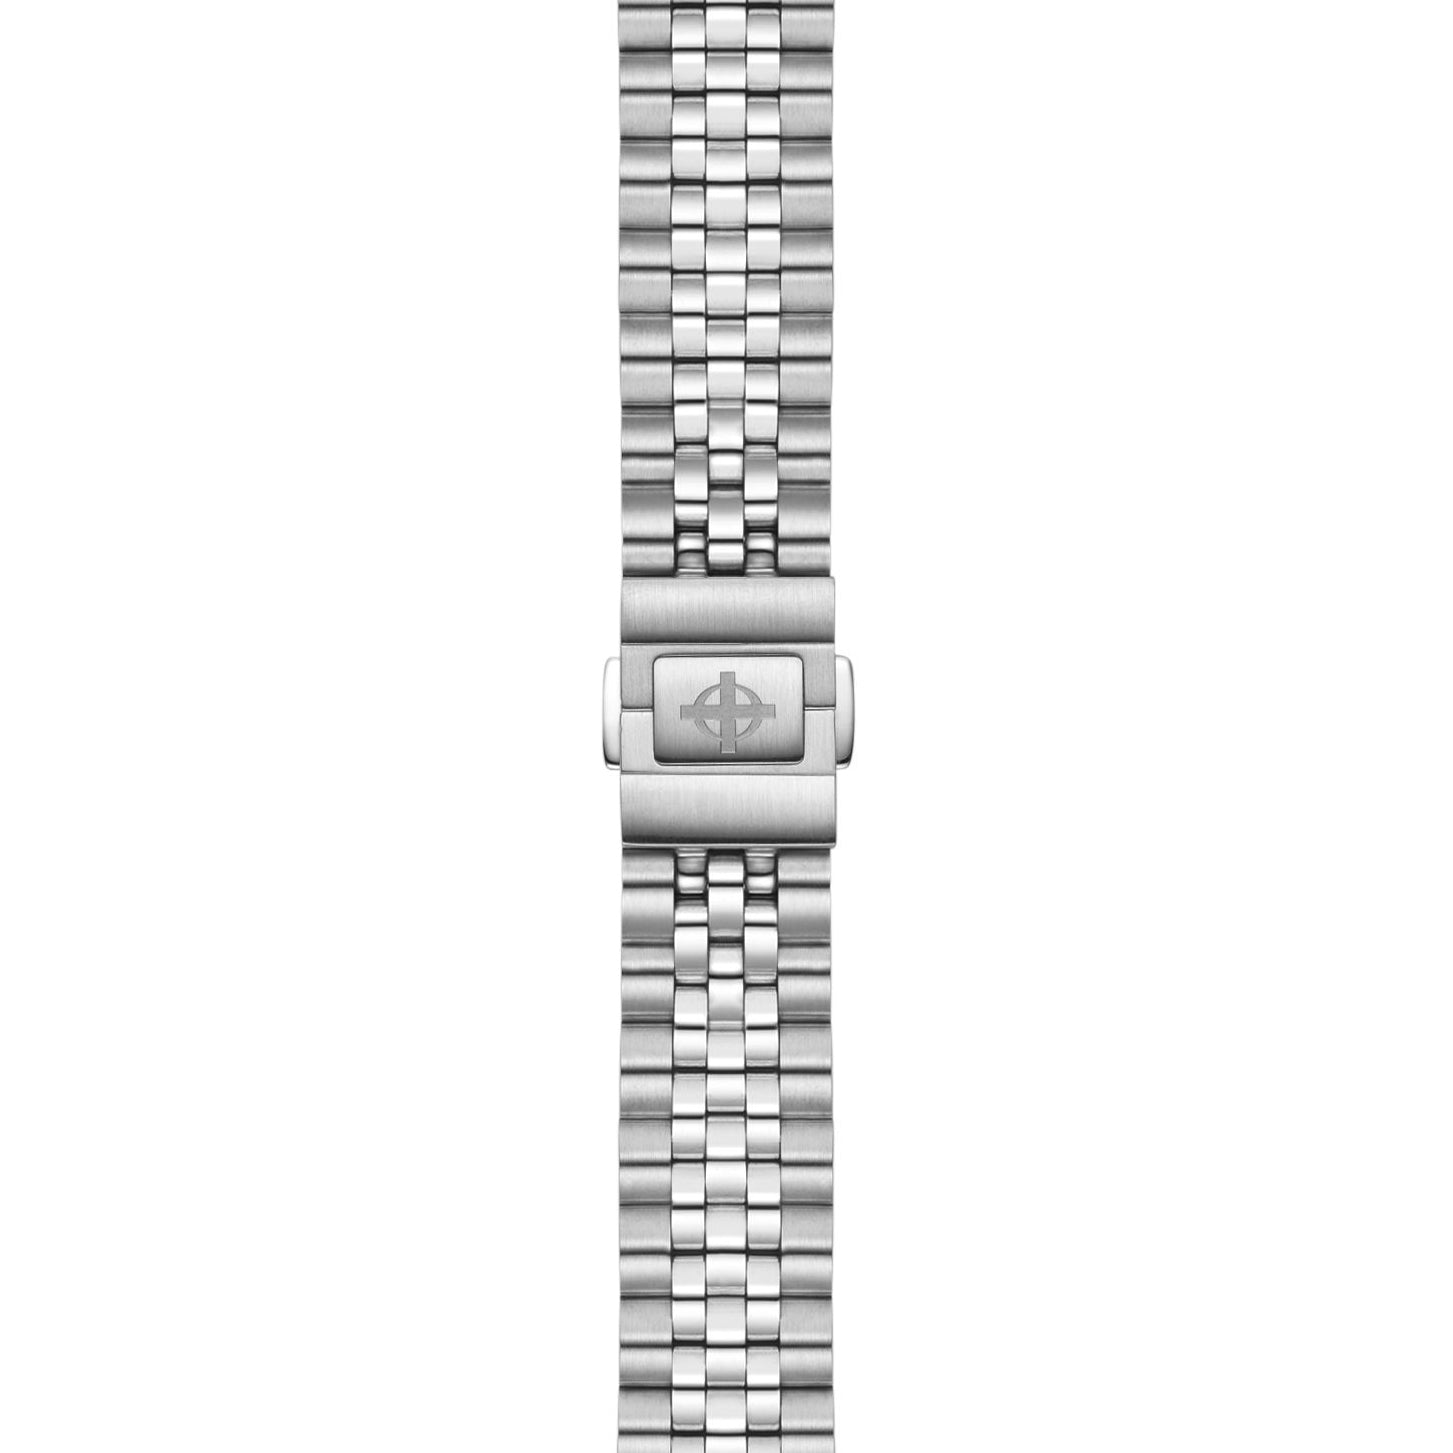 Bracelet watch